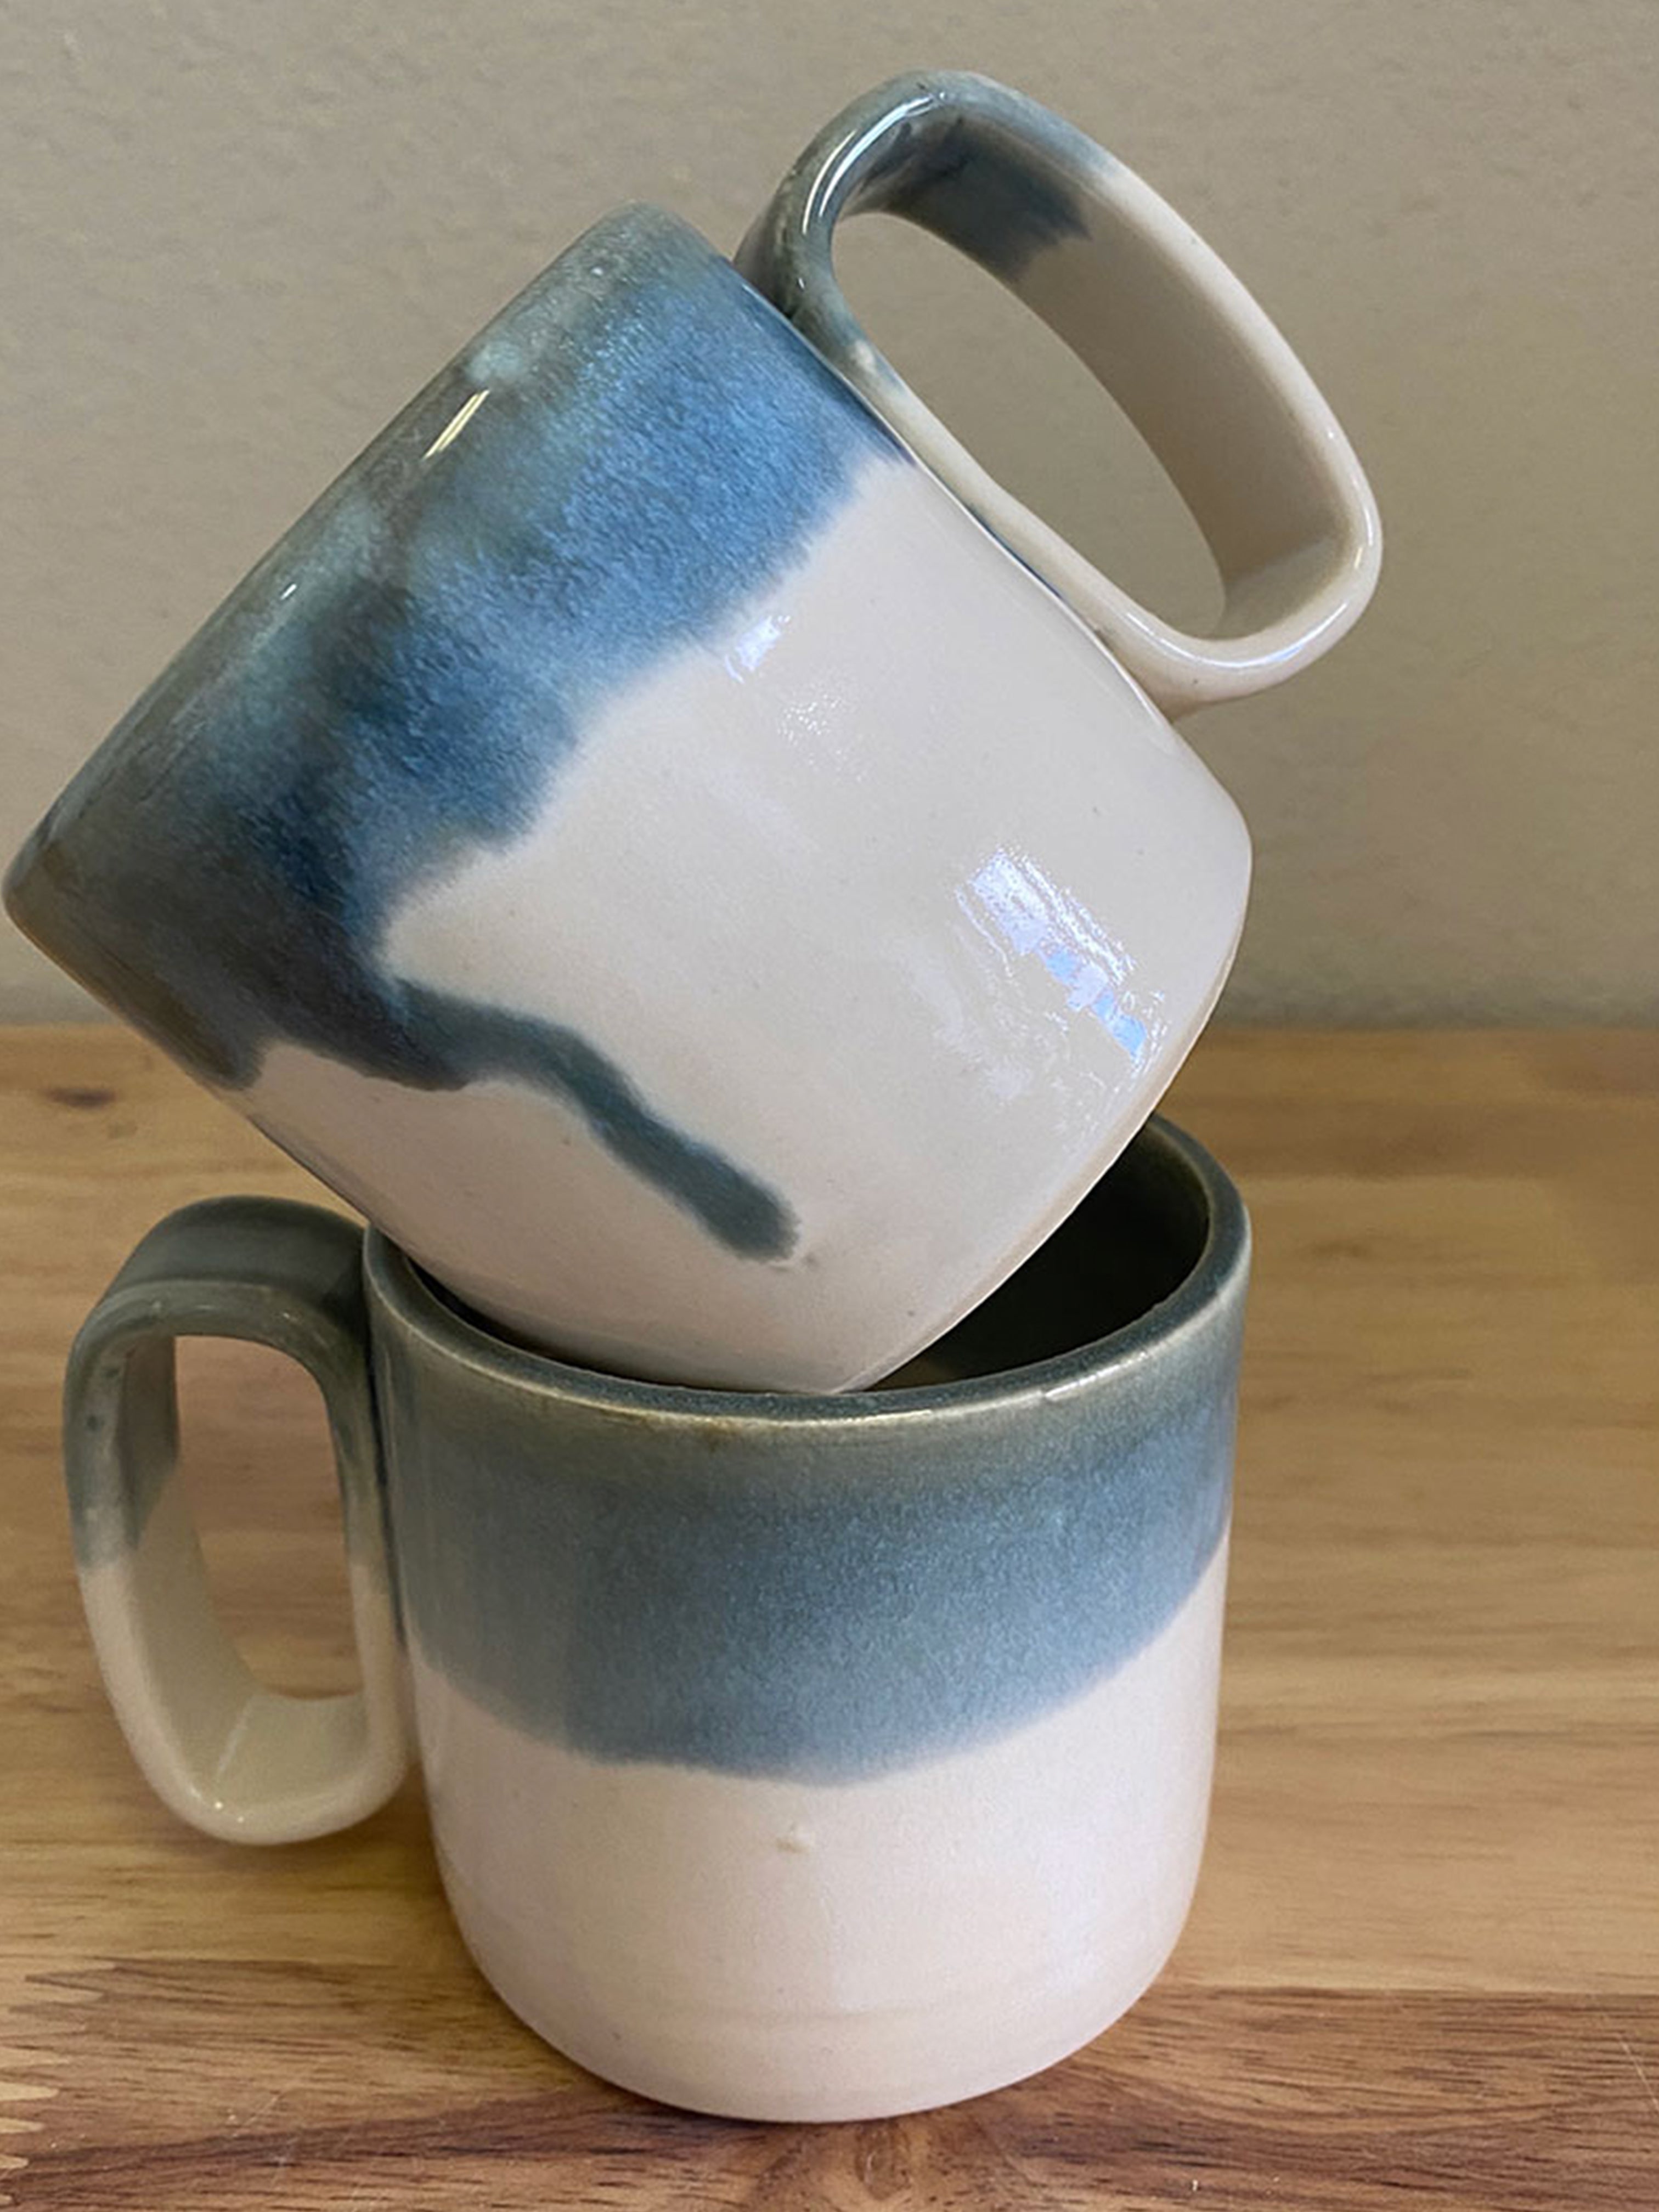 10 oz Coffee Mug